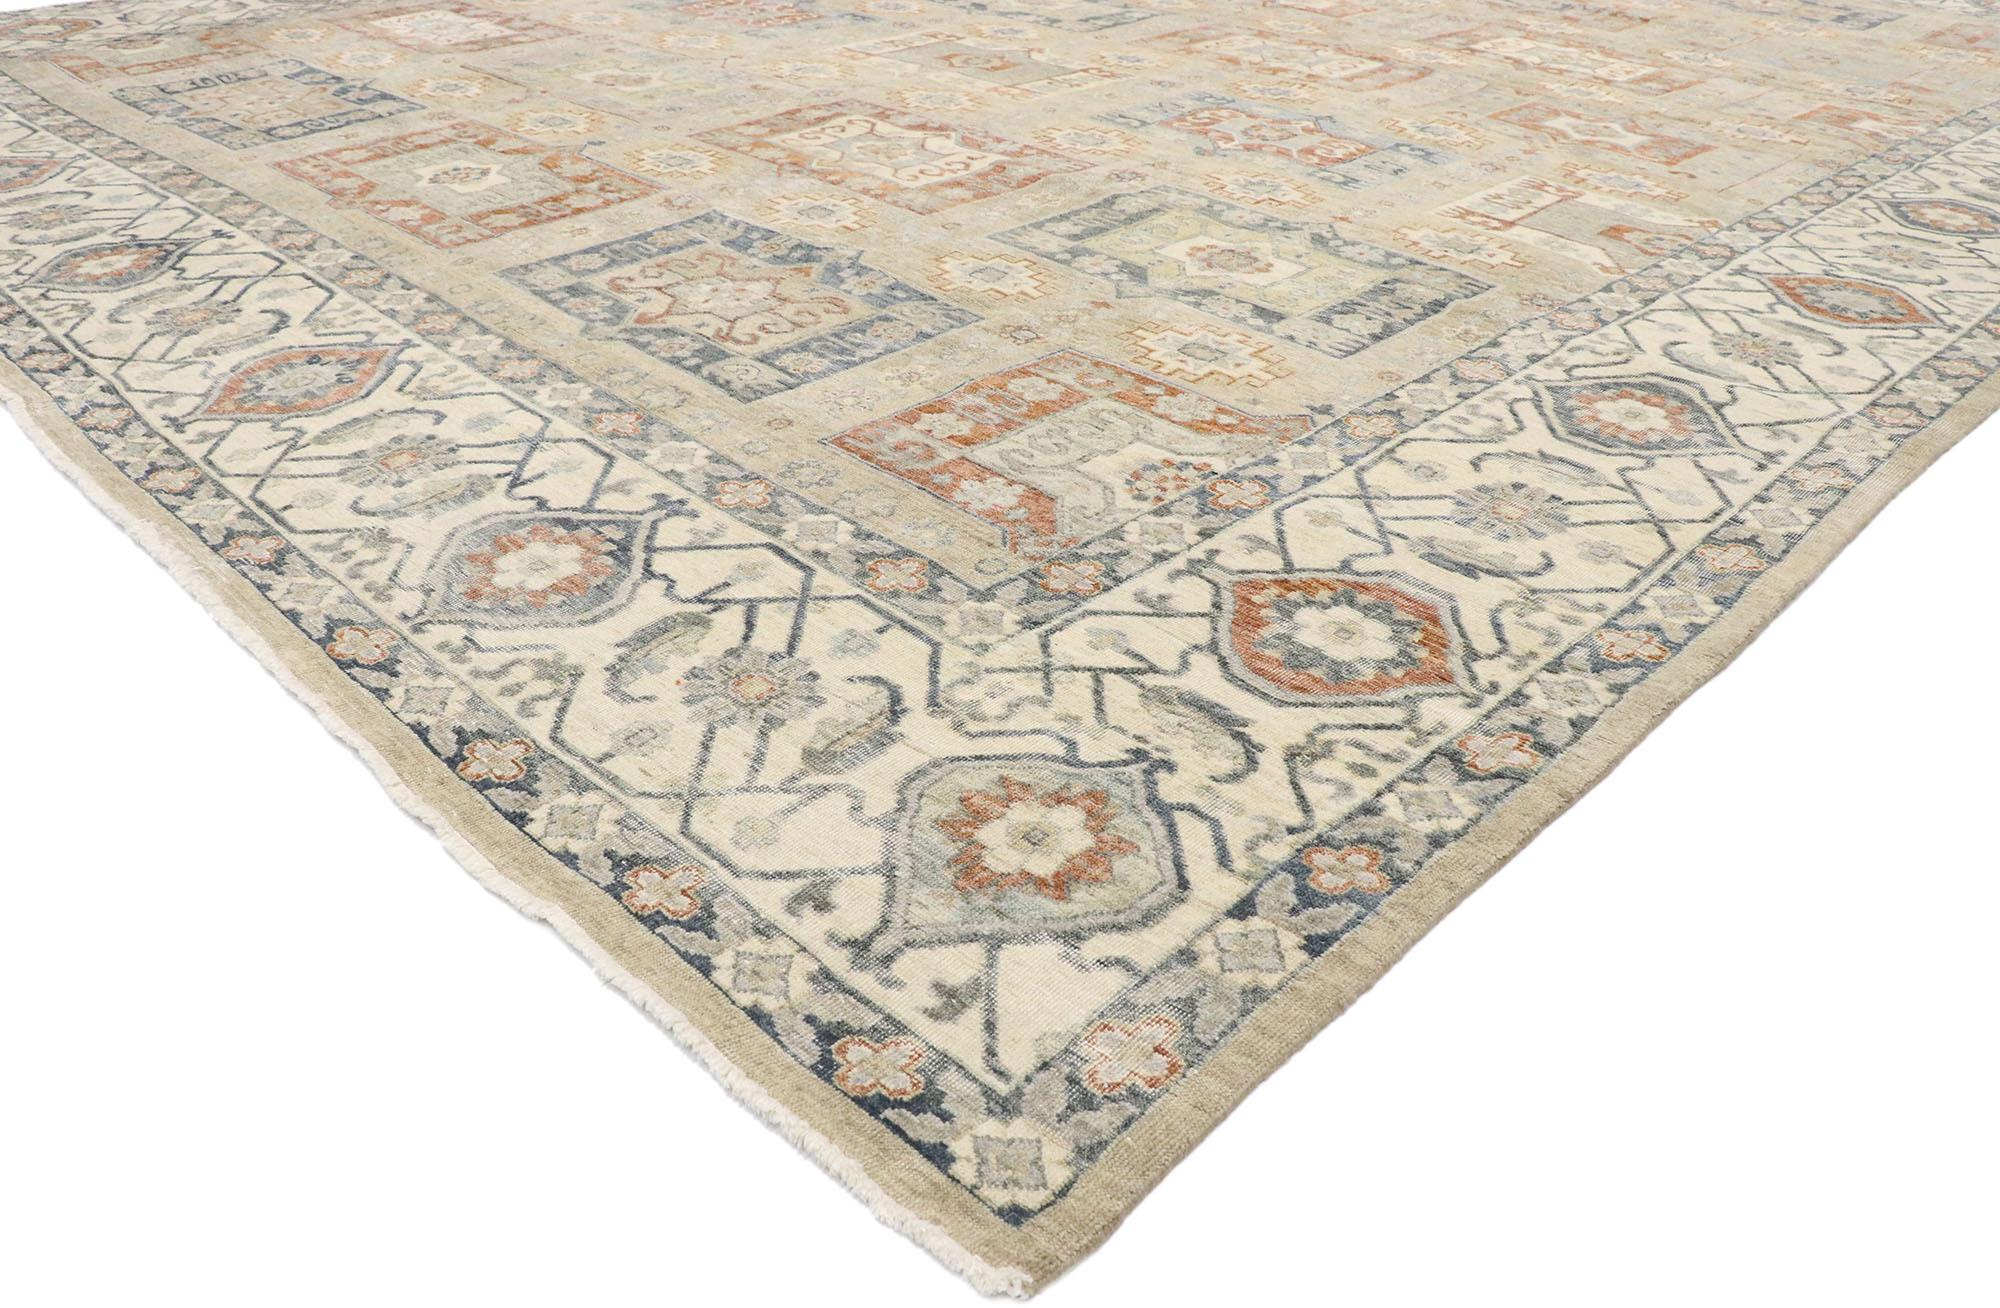 30631 Nouveau tapis contemporain de style Oushak avec un style Arts & Crafts. Ce tapis contemporain de style Oushak, en laine nouée à la main, présente un motif géométrique recouvrant un champ neutre abrasé. Ce motif attrayant est composé de rangées